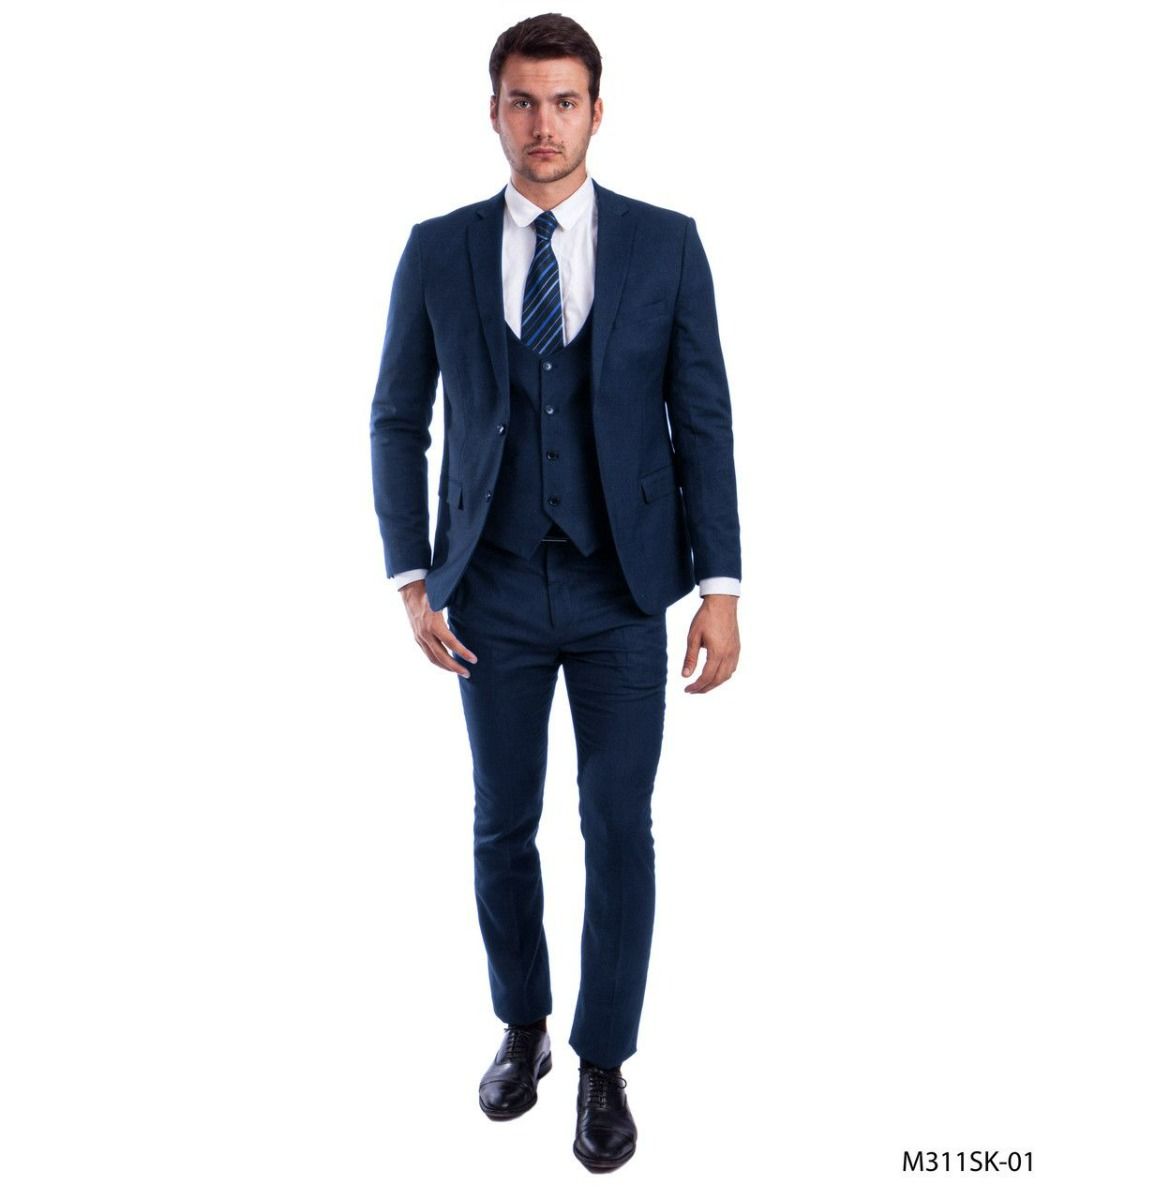 Sean Alexander Men's Outlet 3-Piece Skinny Fit Suit Vest